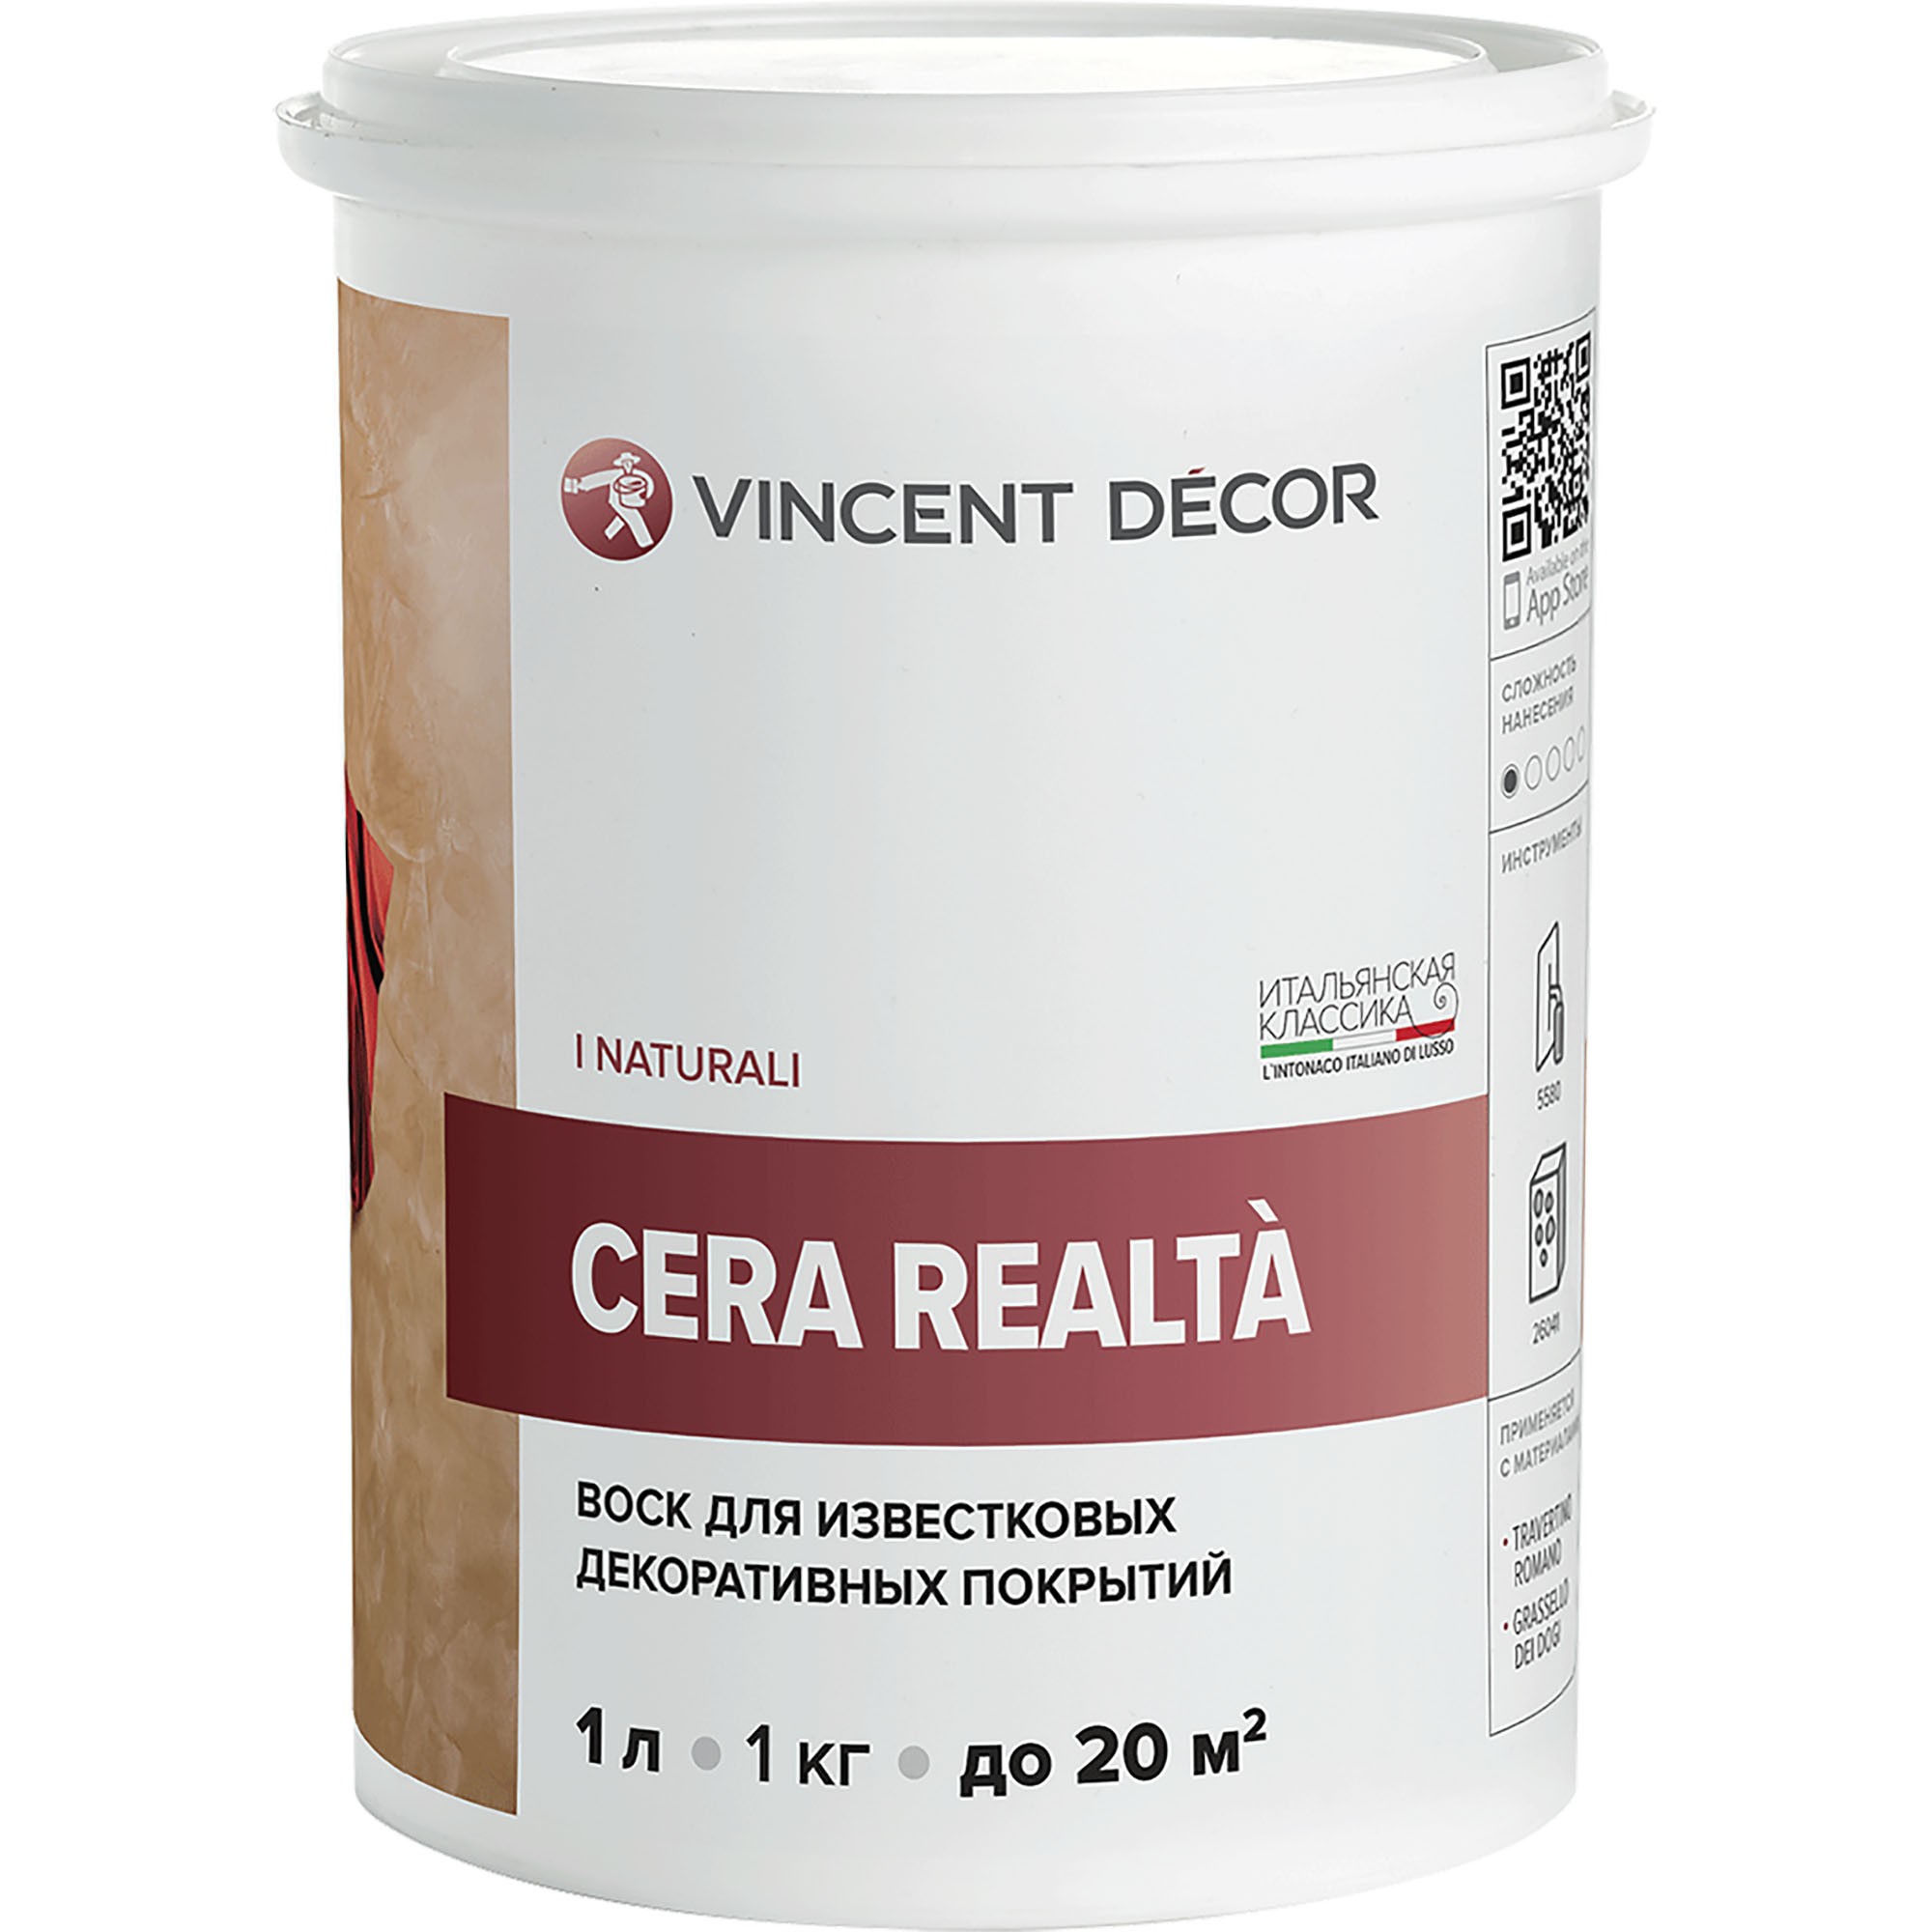 Воск защитный Vincent Decor Cera Realta для известковых декоративных покрытий 1 л грунтовка для декоративных покрытий vincent decor sous couche 4 5 л